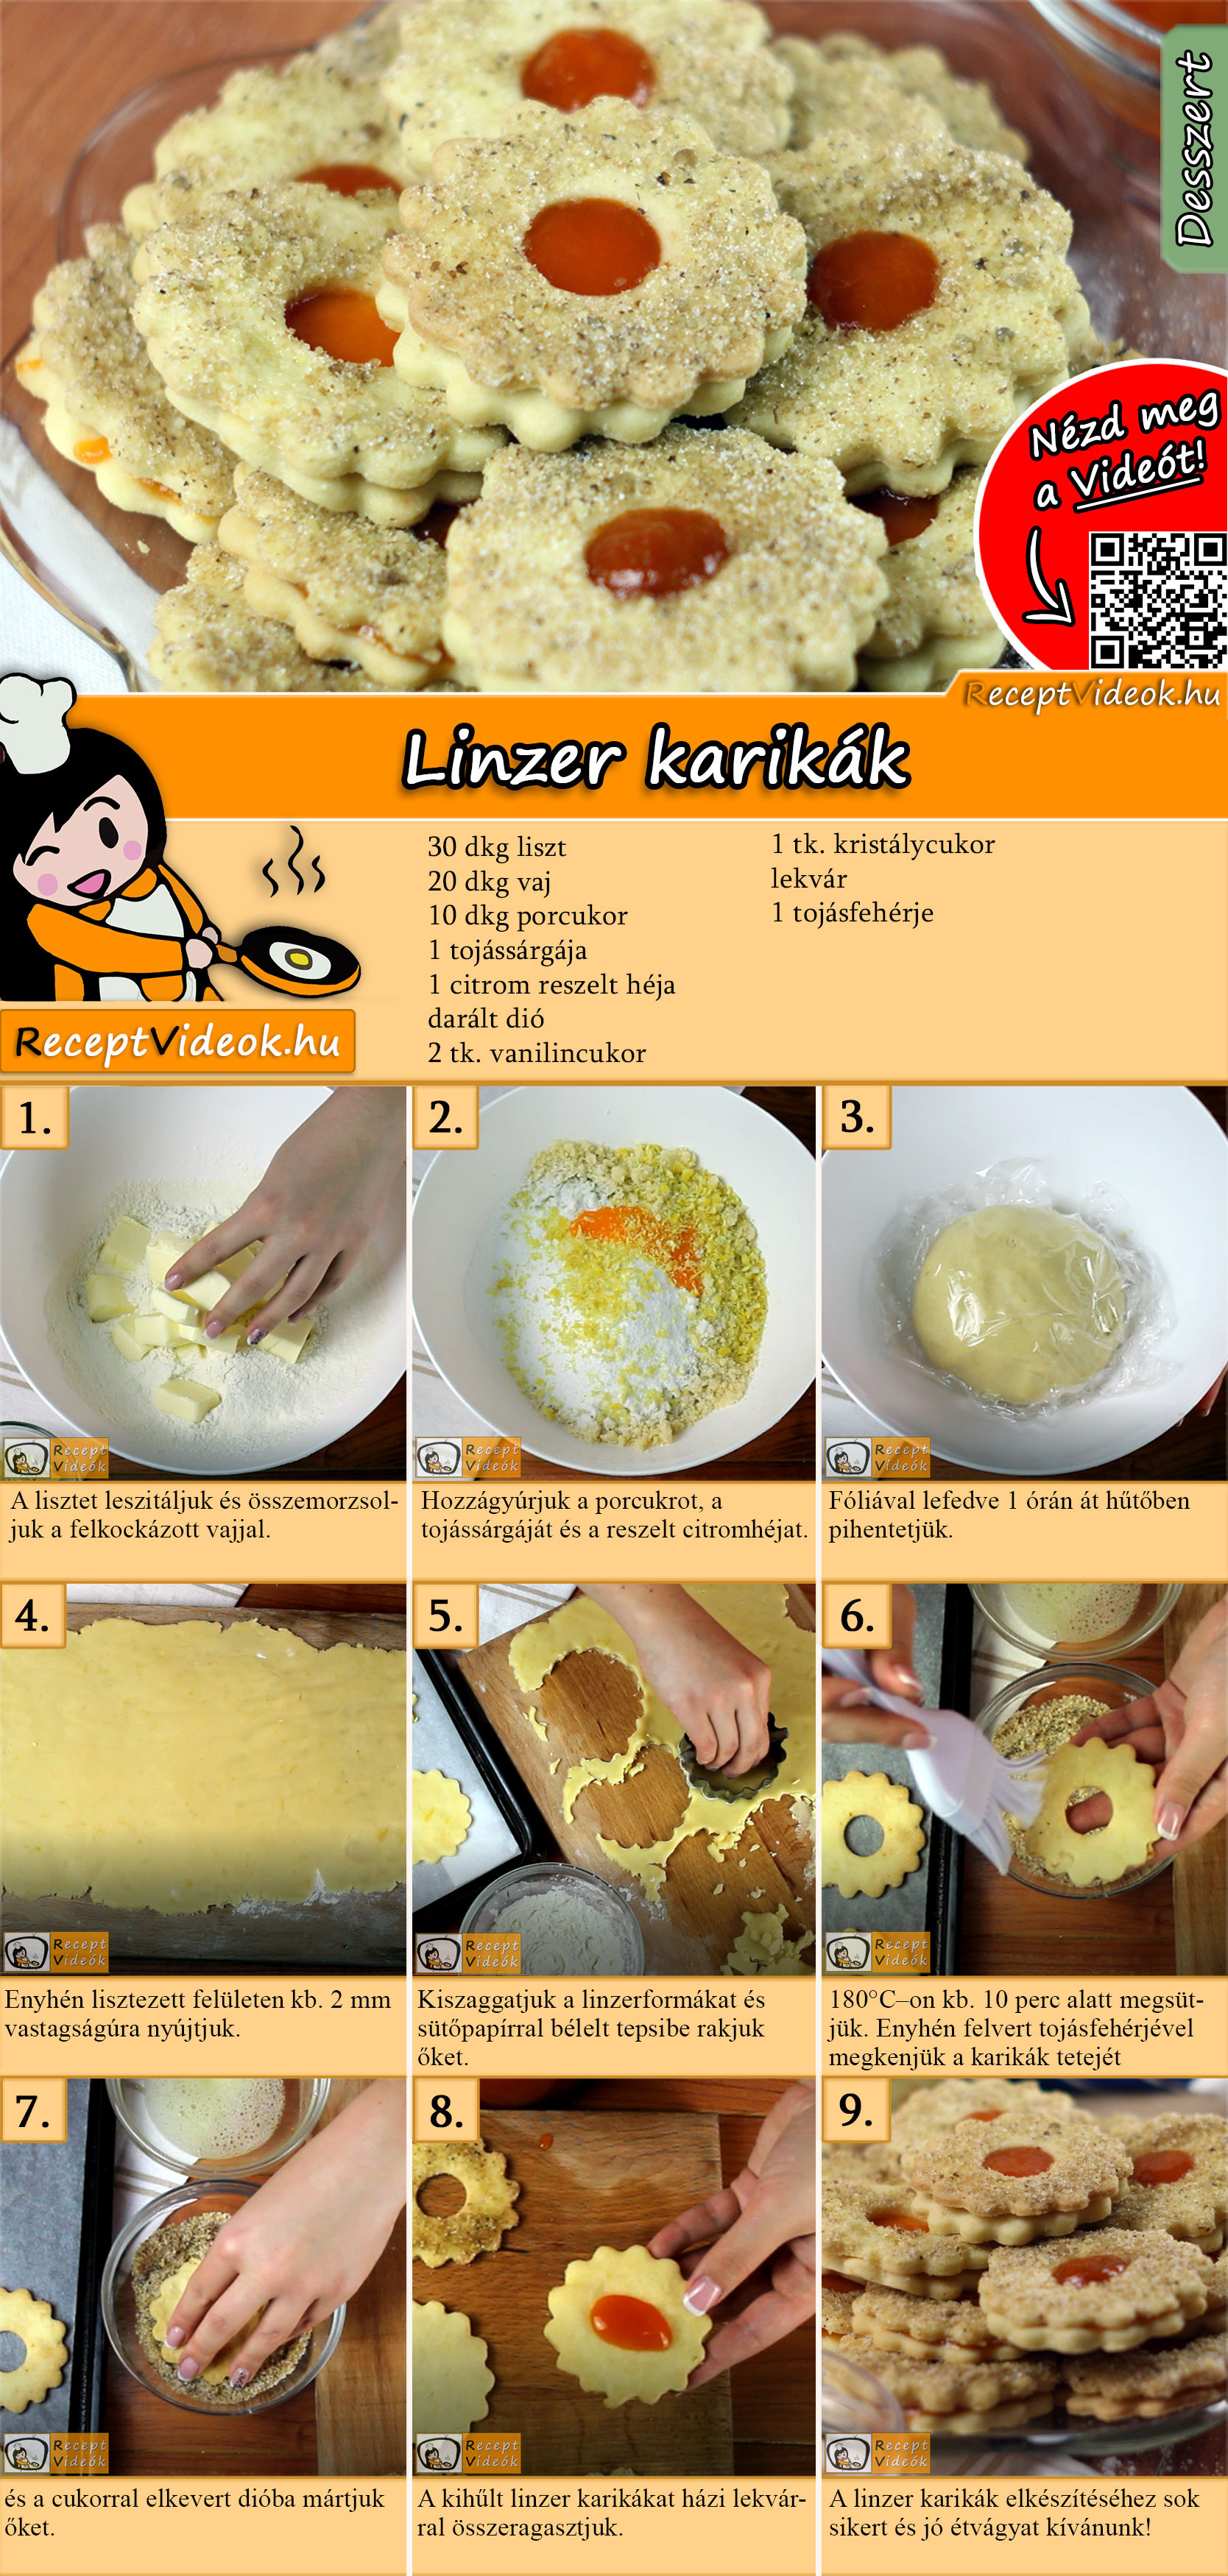 Linzer karikák recept elkészítése videóval